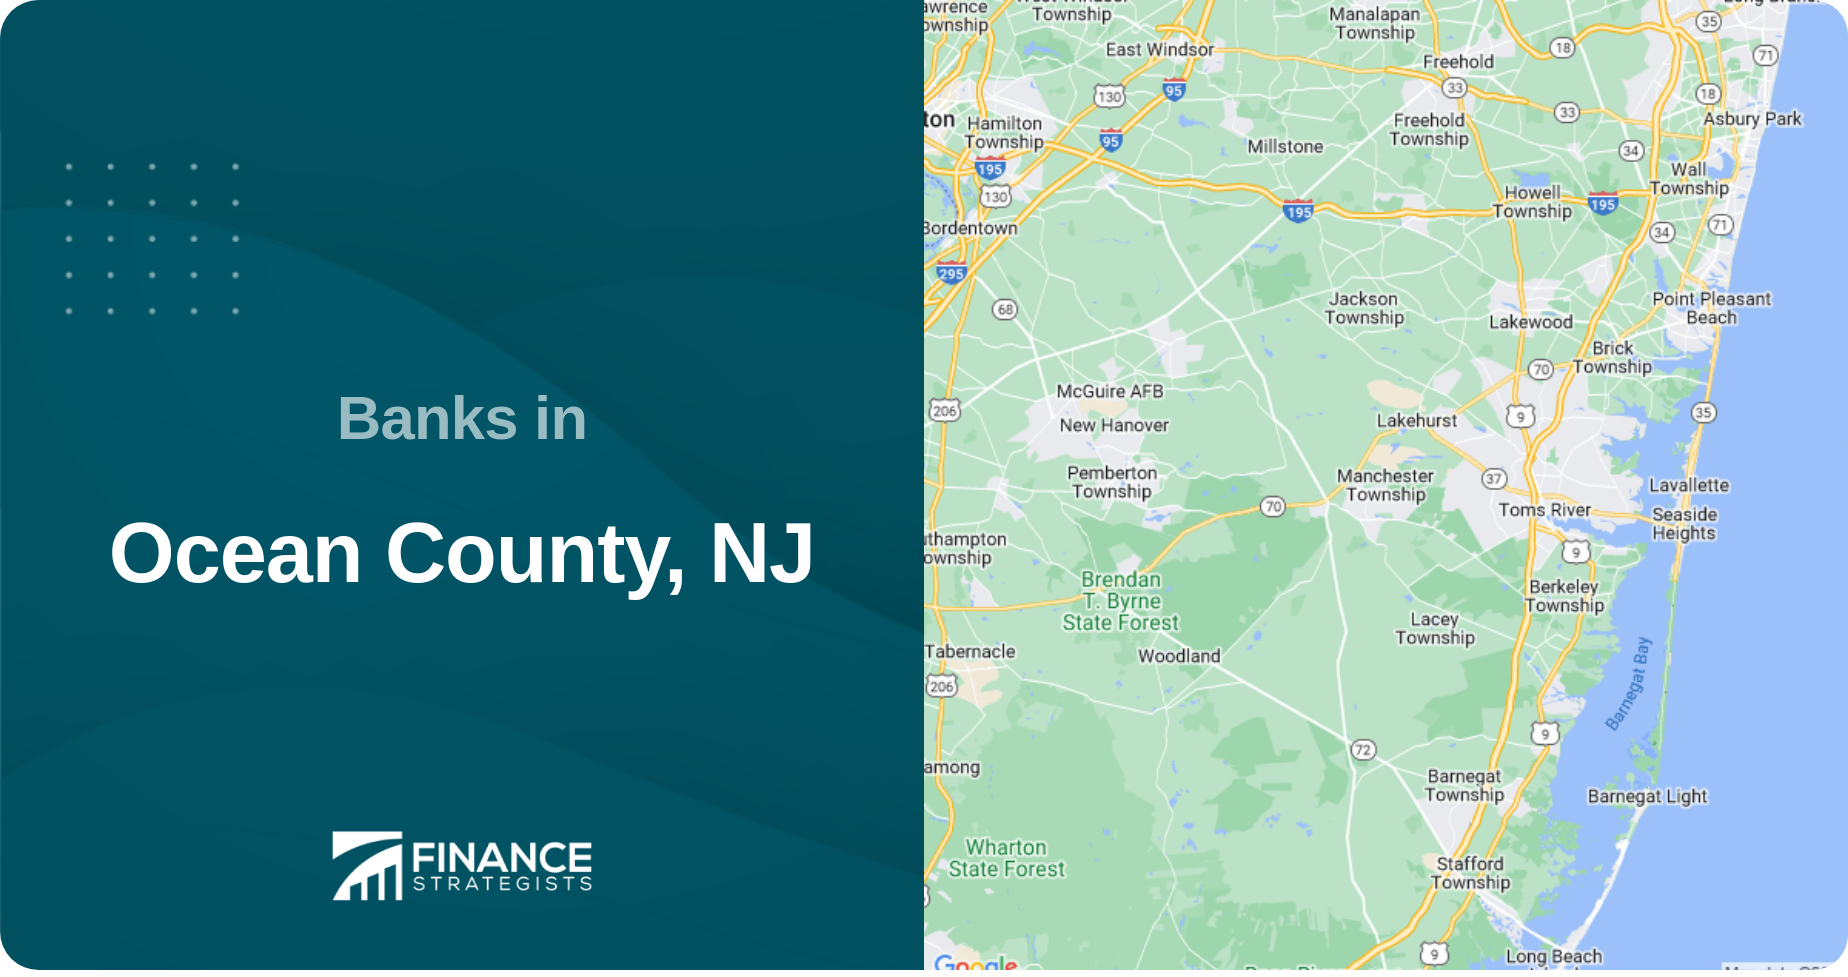 Banks in Ocean County, NJ